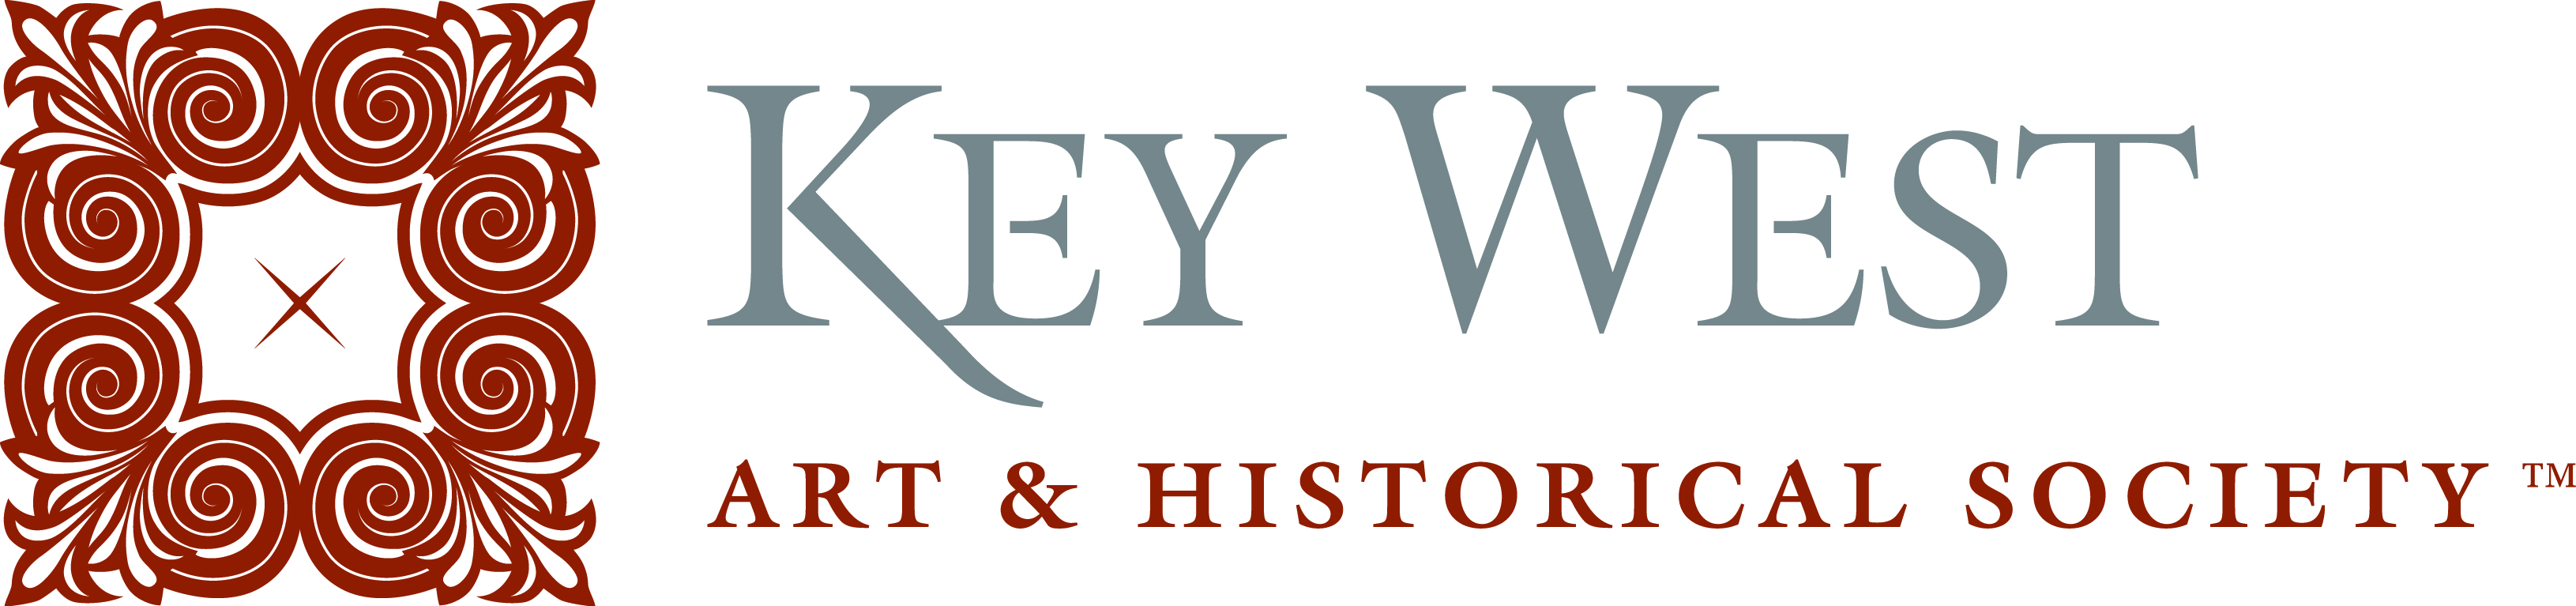 Key West Art & Historical Society